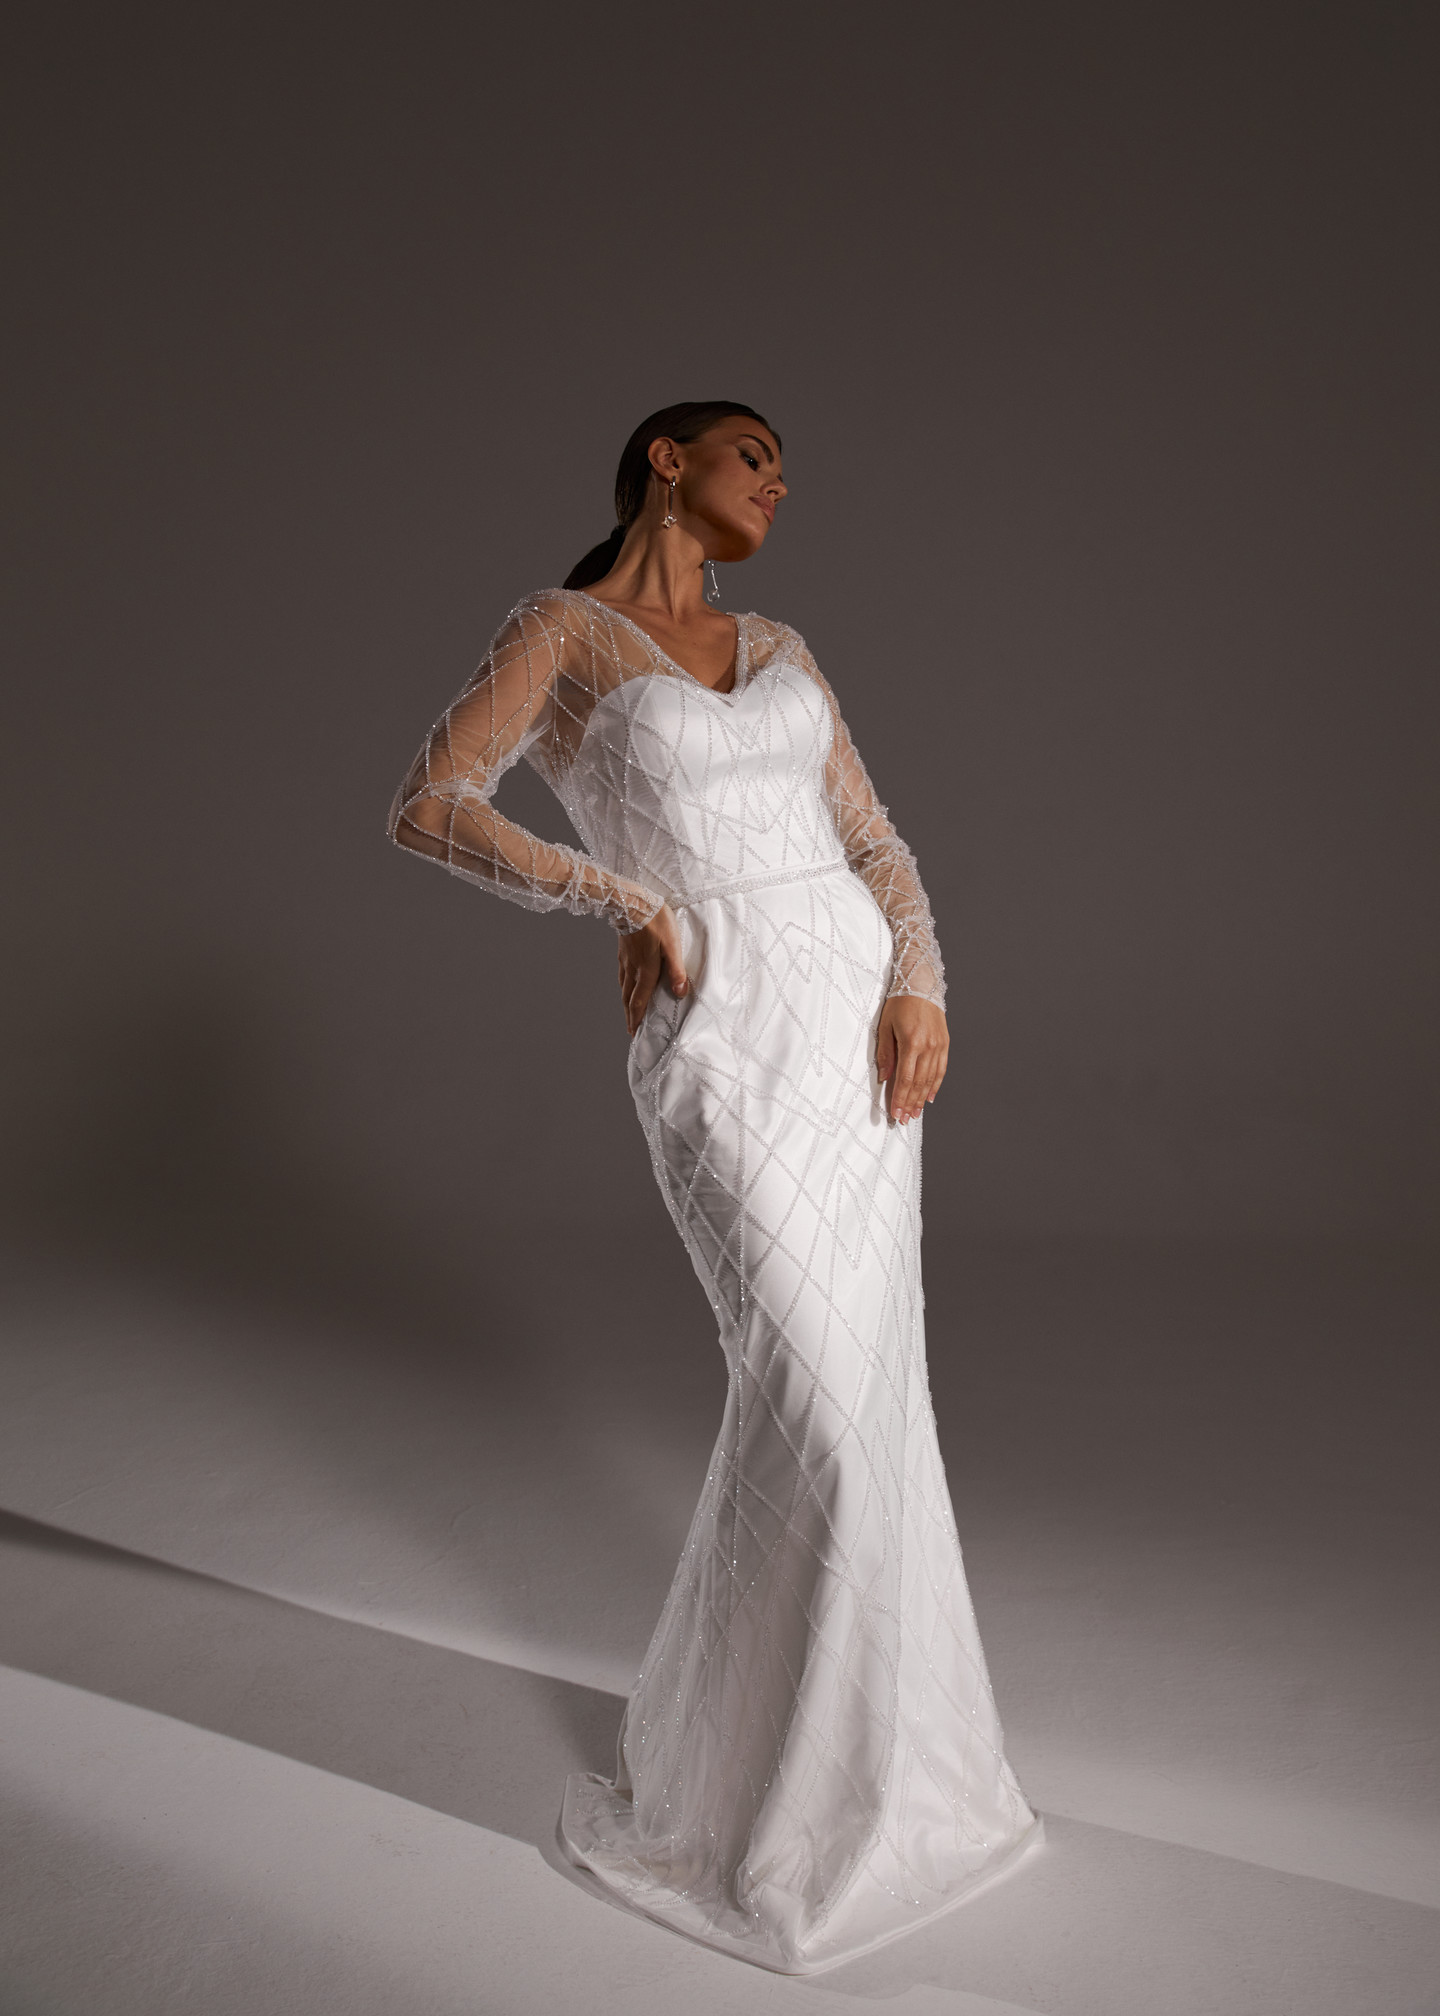 Платье Селеста, 2019, одежда, платье, свадебное, молочно-белый, вышивка, рукава, прямой силуэт, популярное